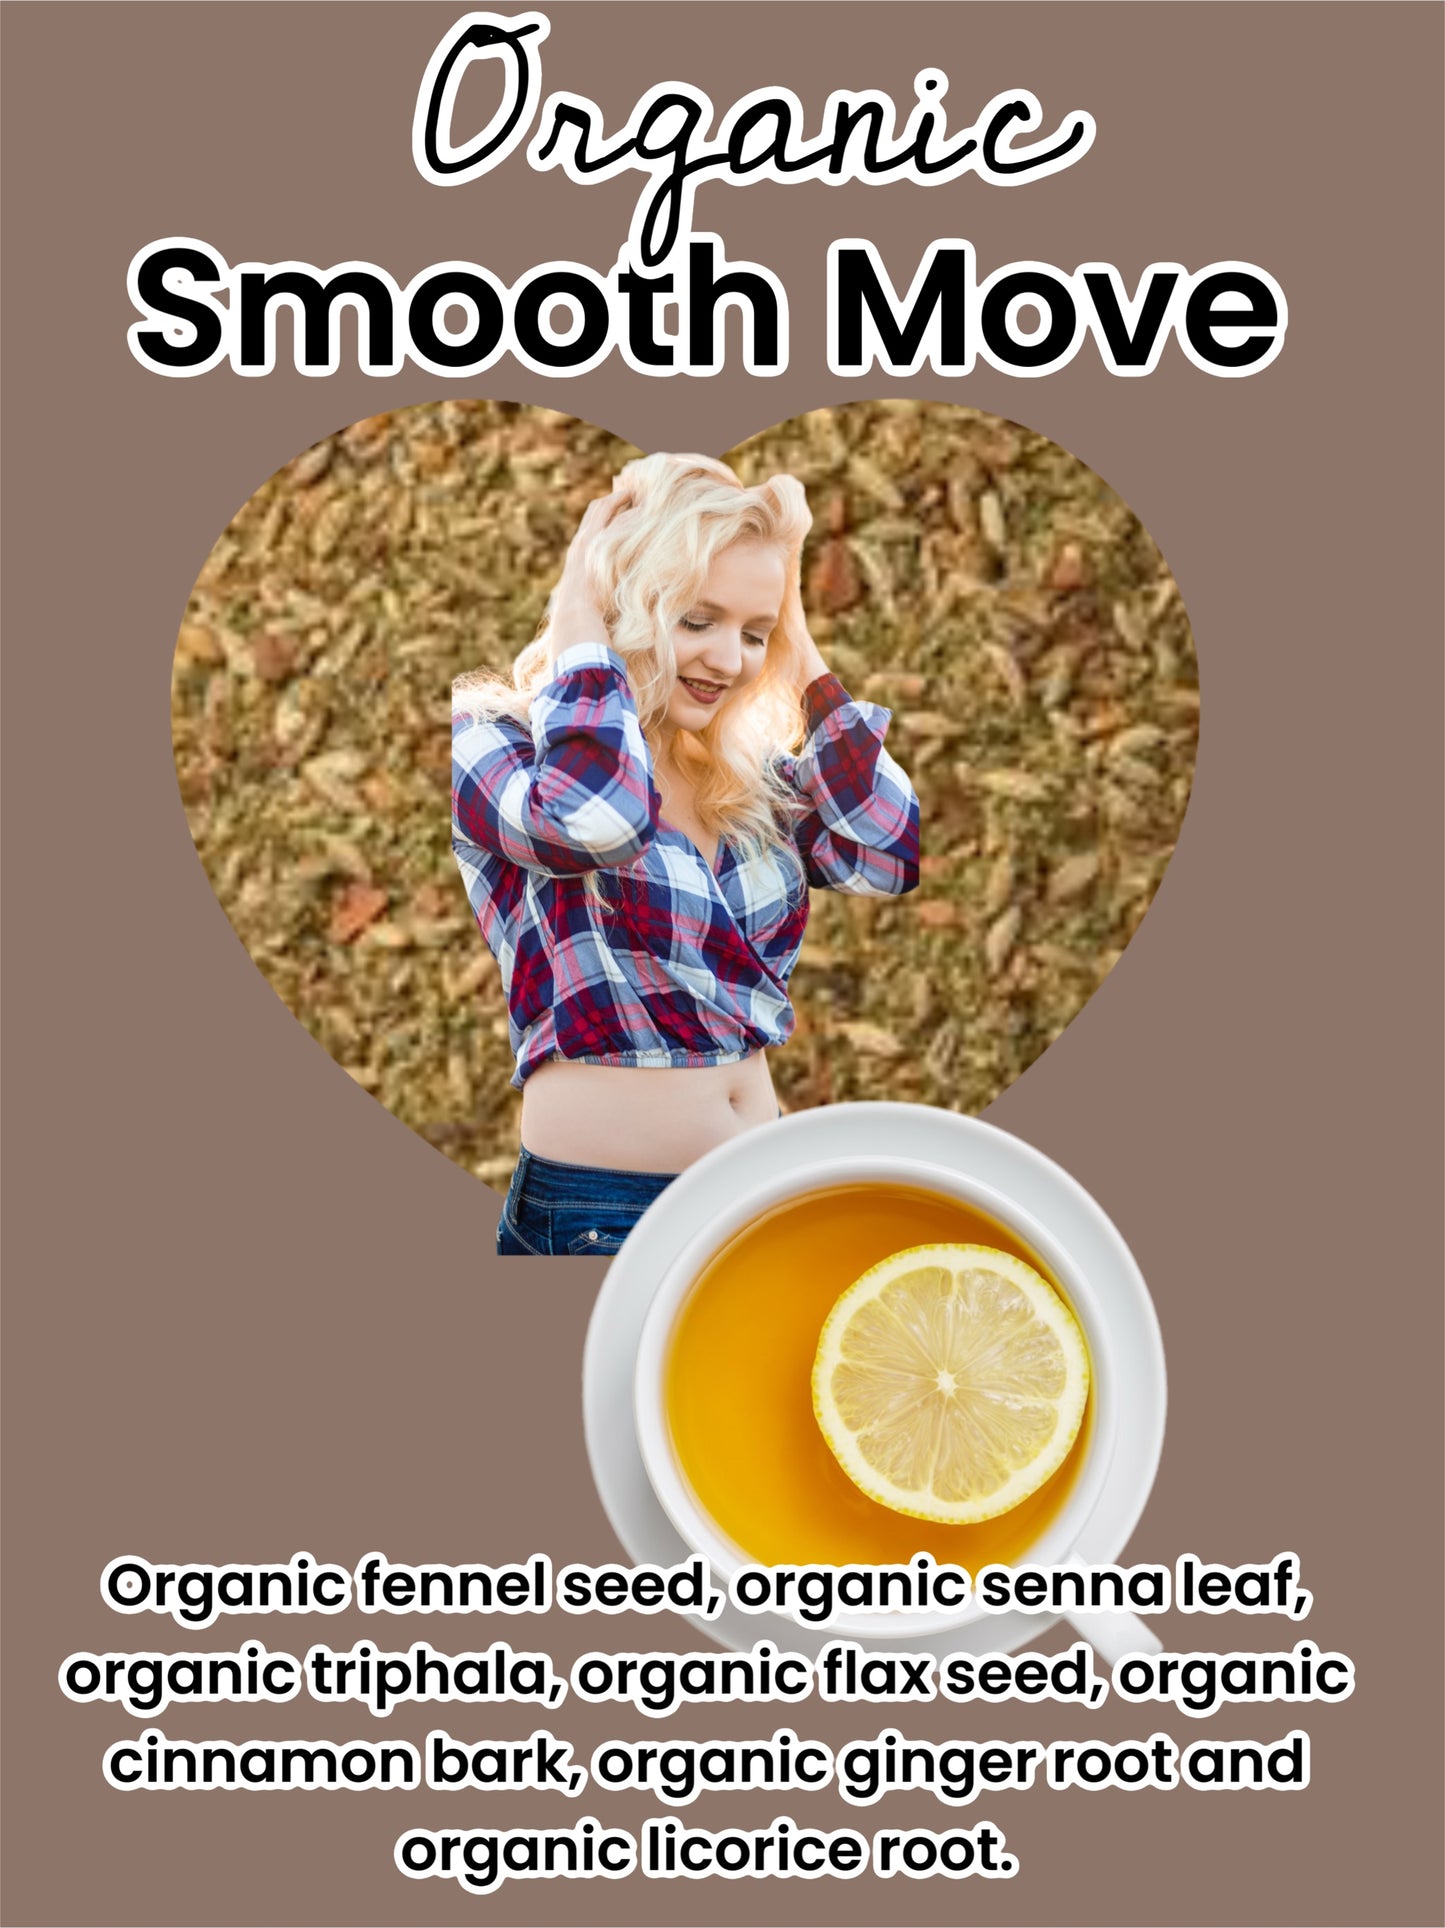 Smooth Move Organic Tea Blend (Loose -Leaf)